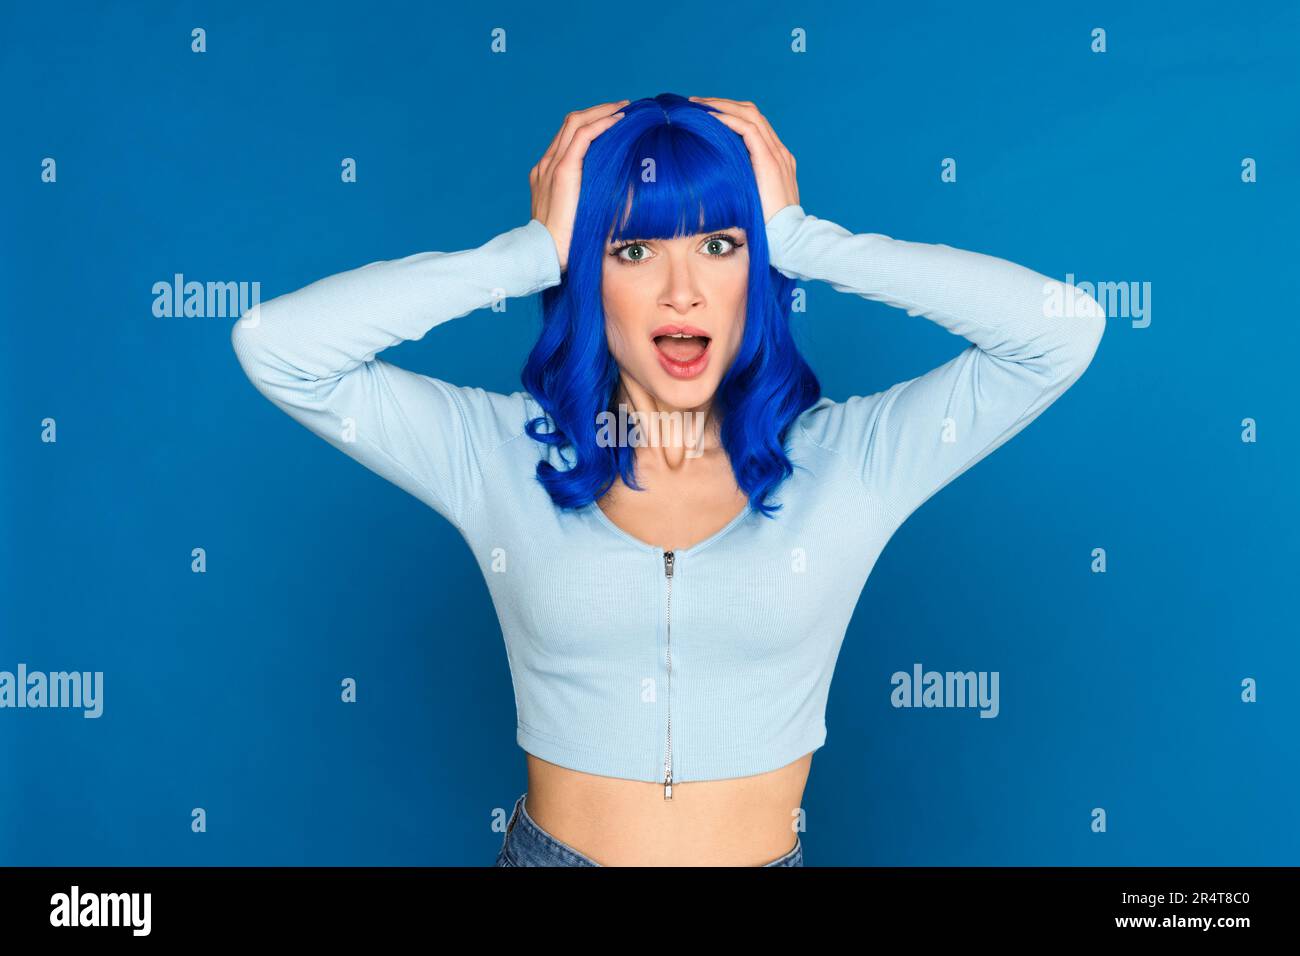 Schockiertes junges weibliches Model mit gefärbtem, hellblauem Haar in legerer Kleidung, das den Kopf packt und mit offenem Mund in die Kamera schaut Stockfoto